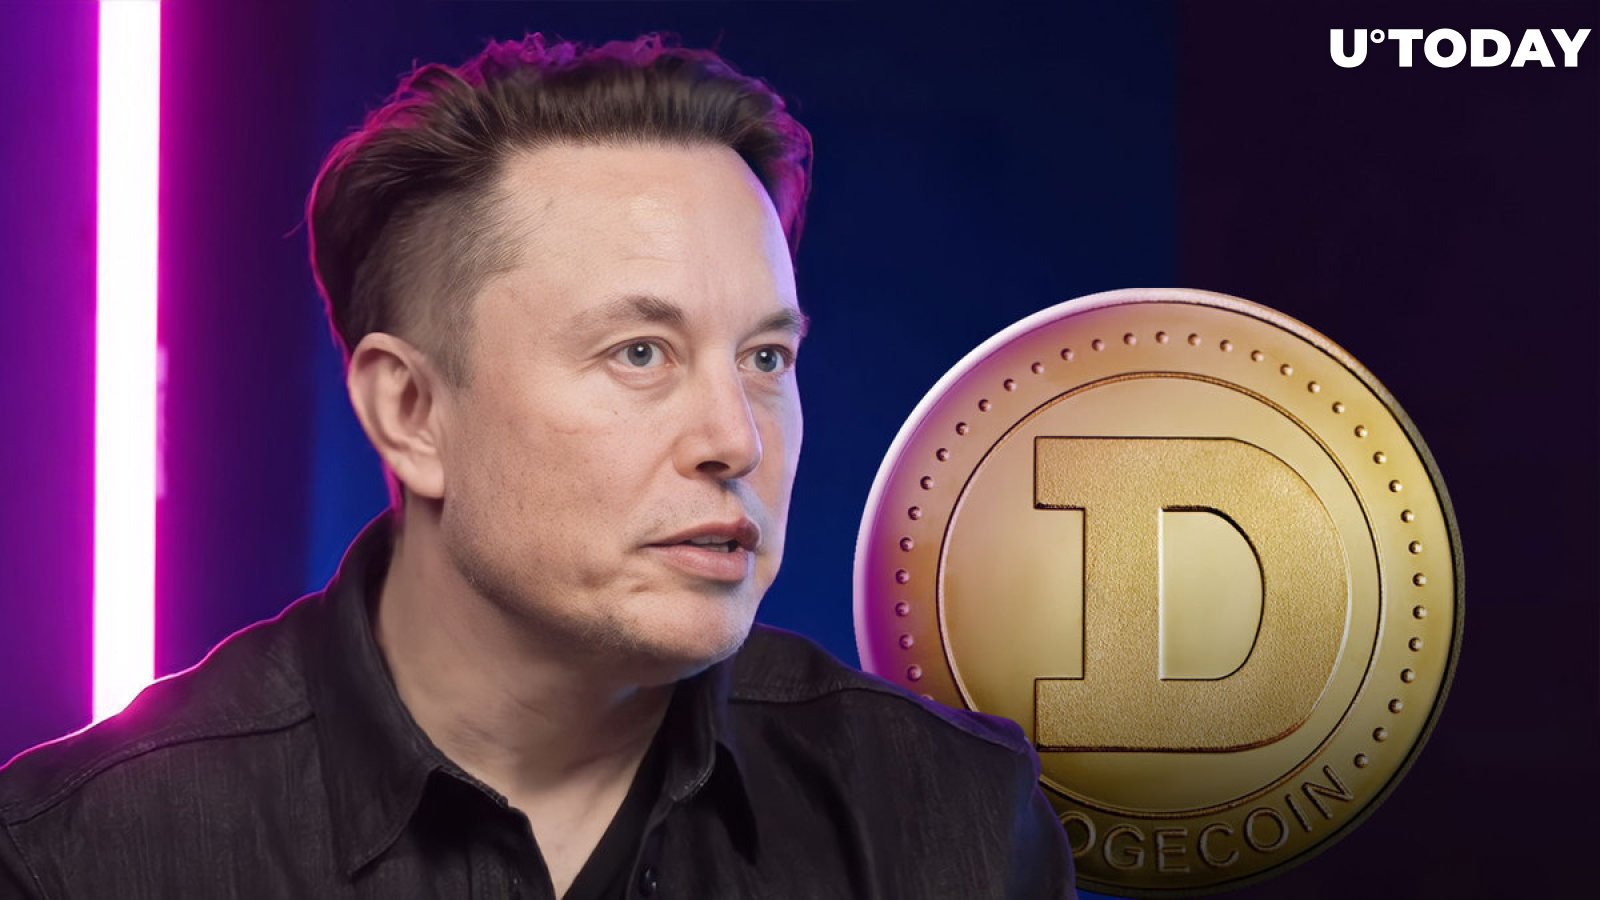 Hona hemen Elon Musk-ek zer ospatzen duen Dogecoin eguna iristean